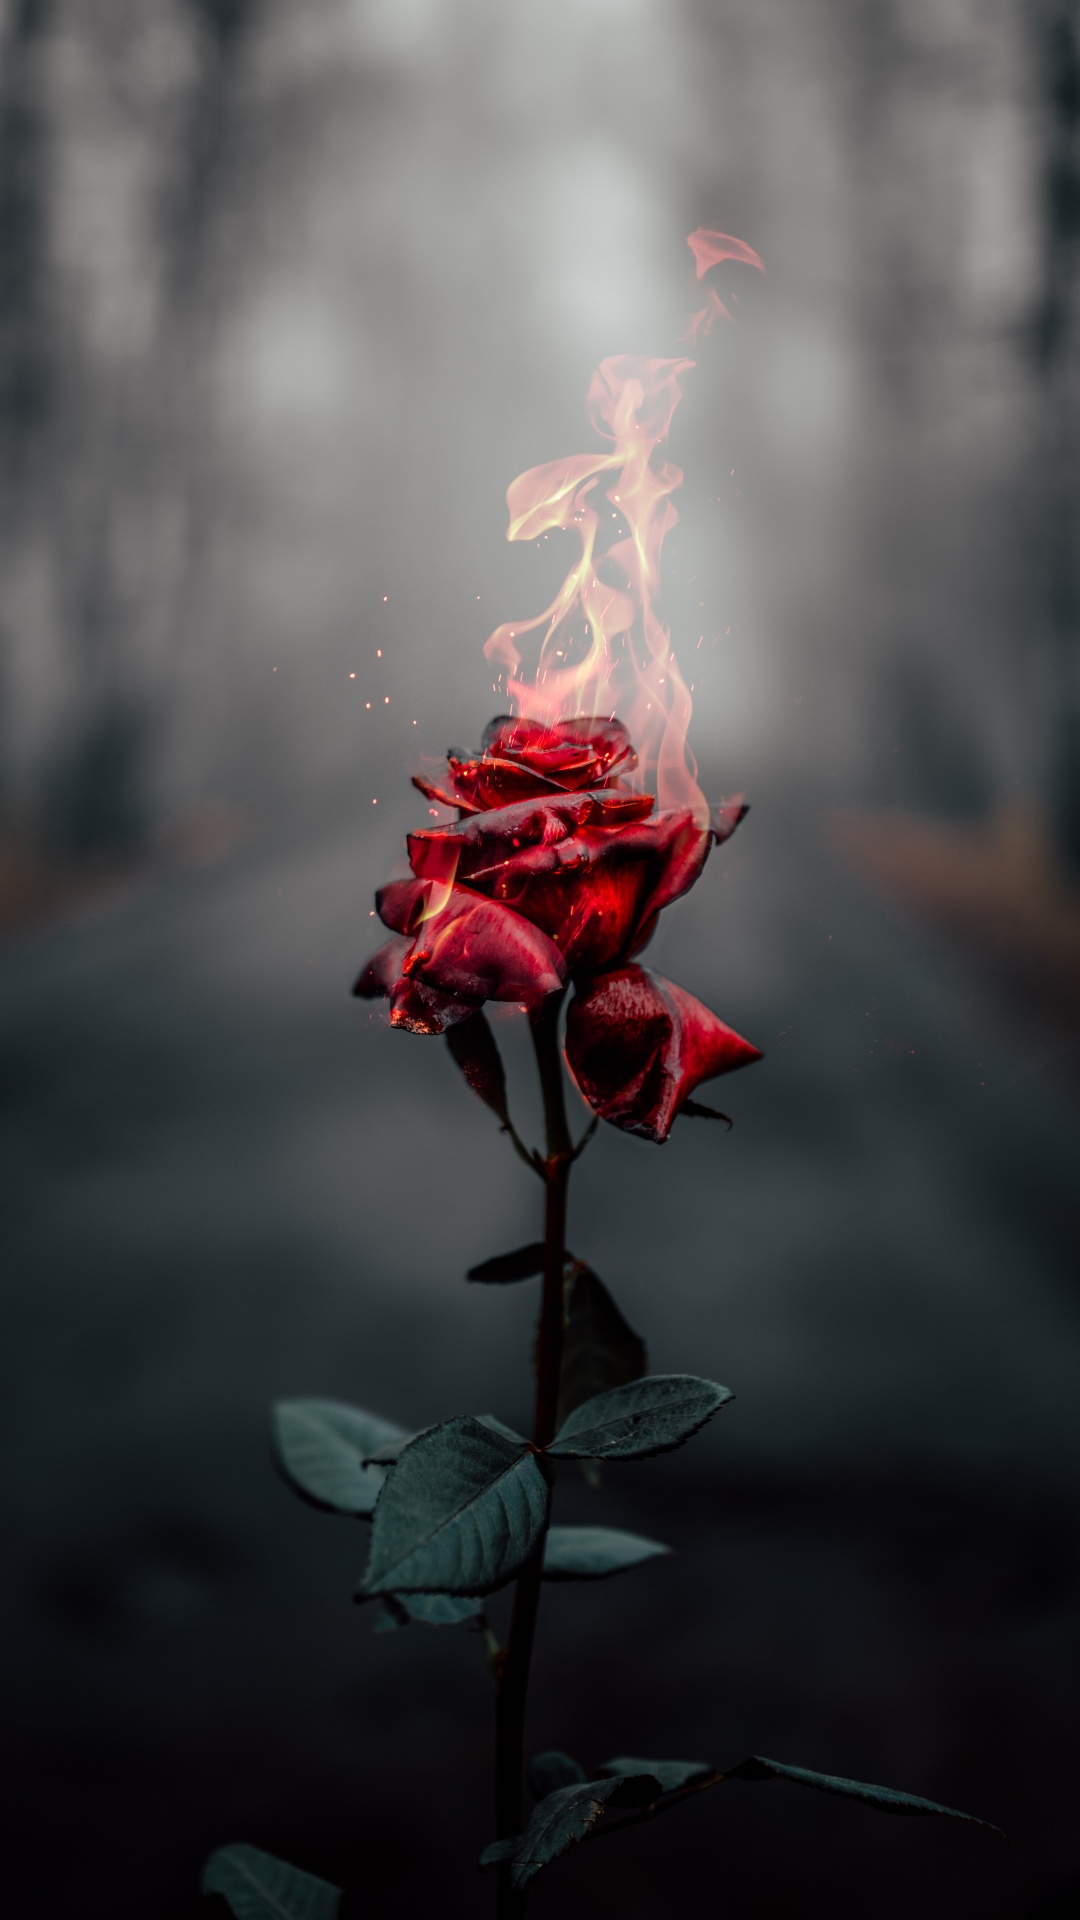 Rose flower 4K Wallpaper, Fire, Burning, Dark, Flowers, #464